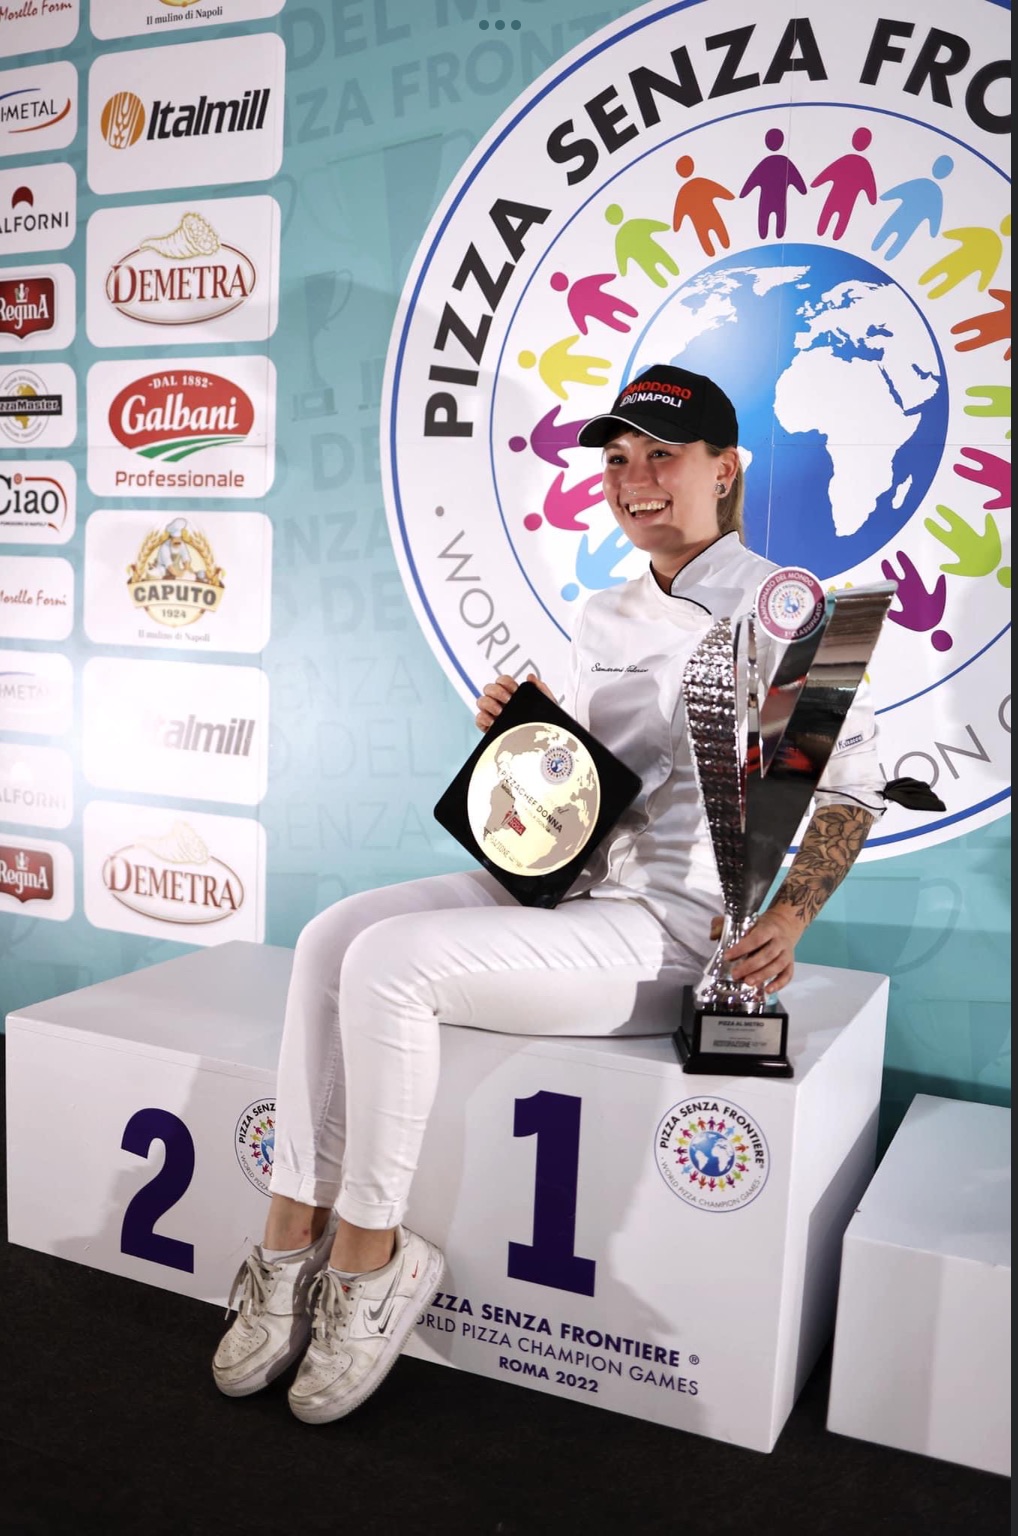 Federica Samarani, RockPizzaiola d’autore, protagonista vincente al Campionato del Mondo della Pizza. 